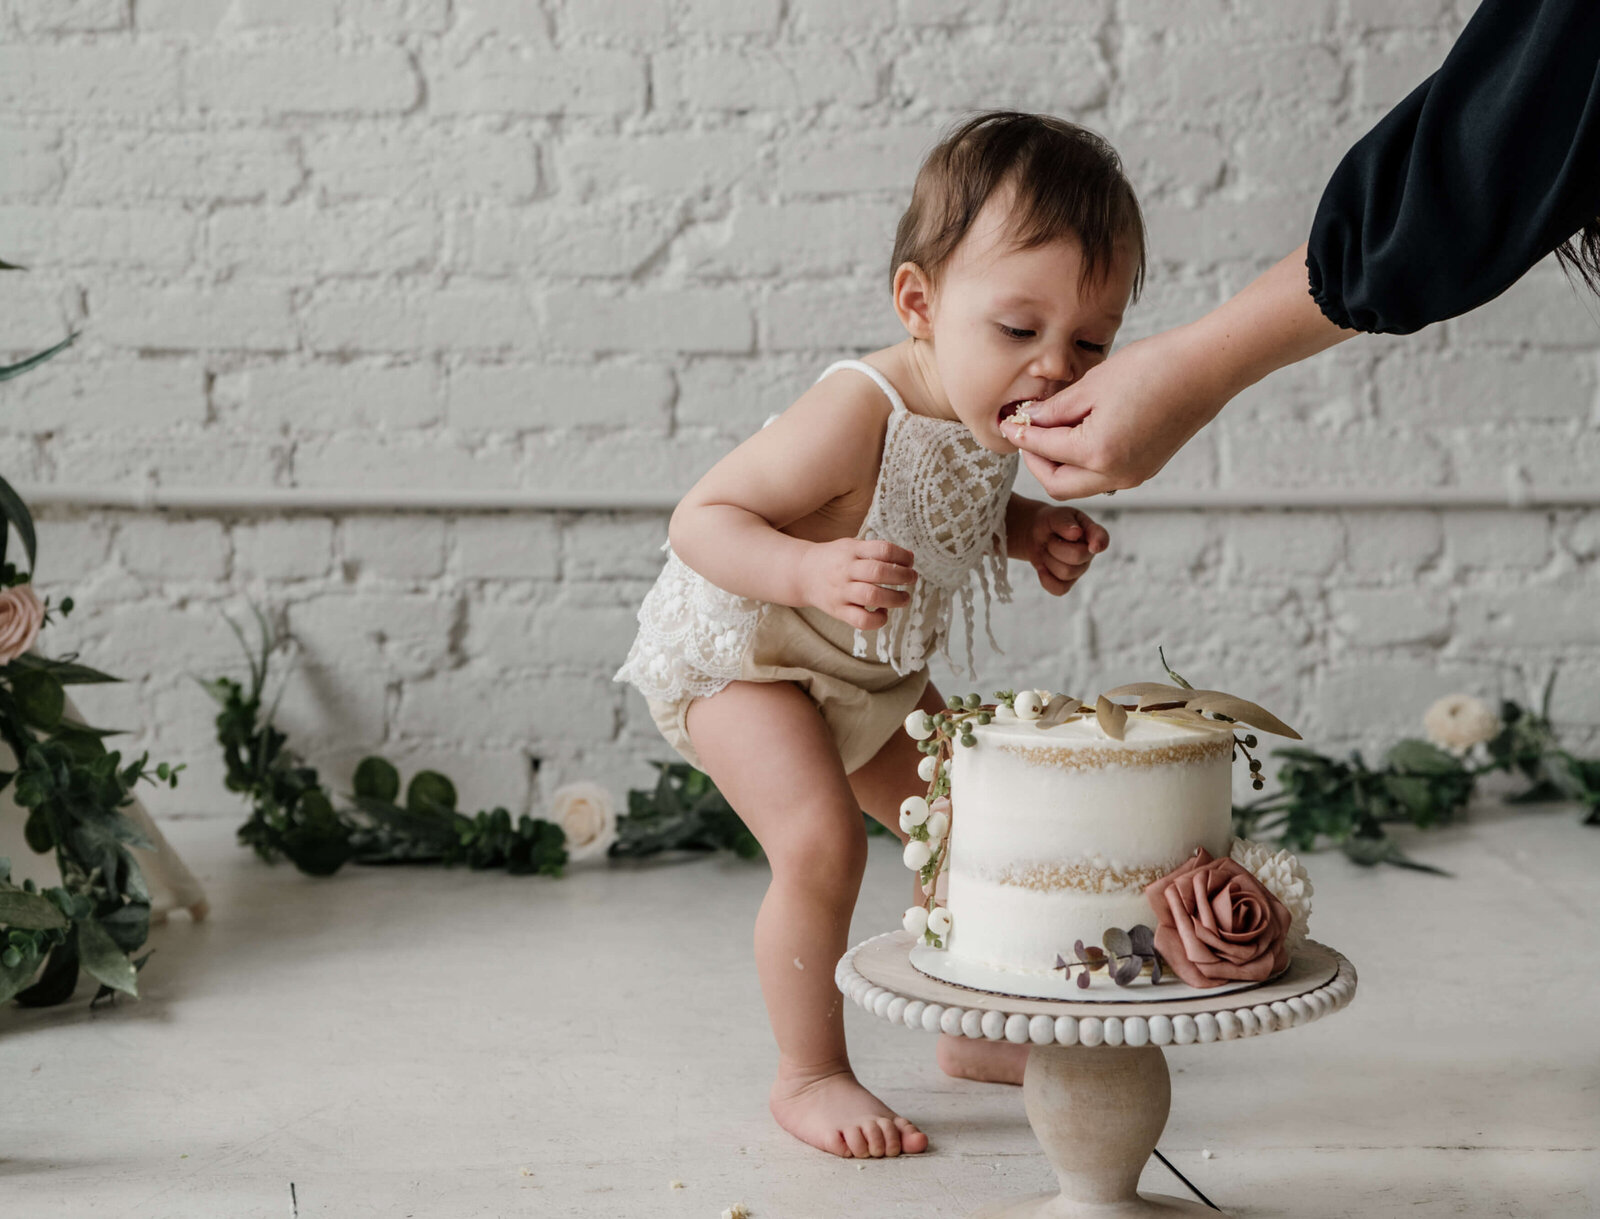 Little baby eating cake.